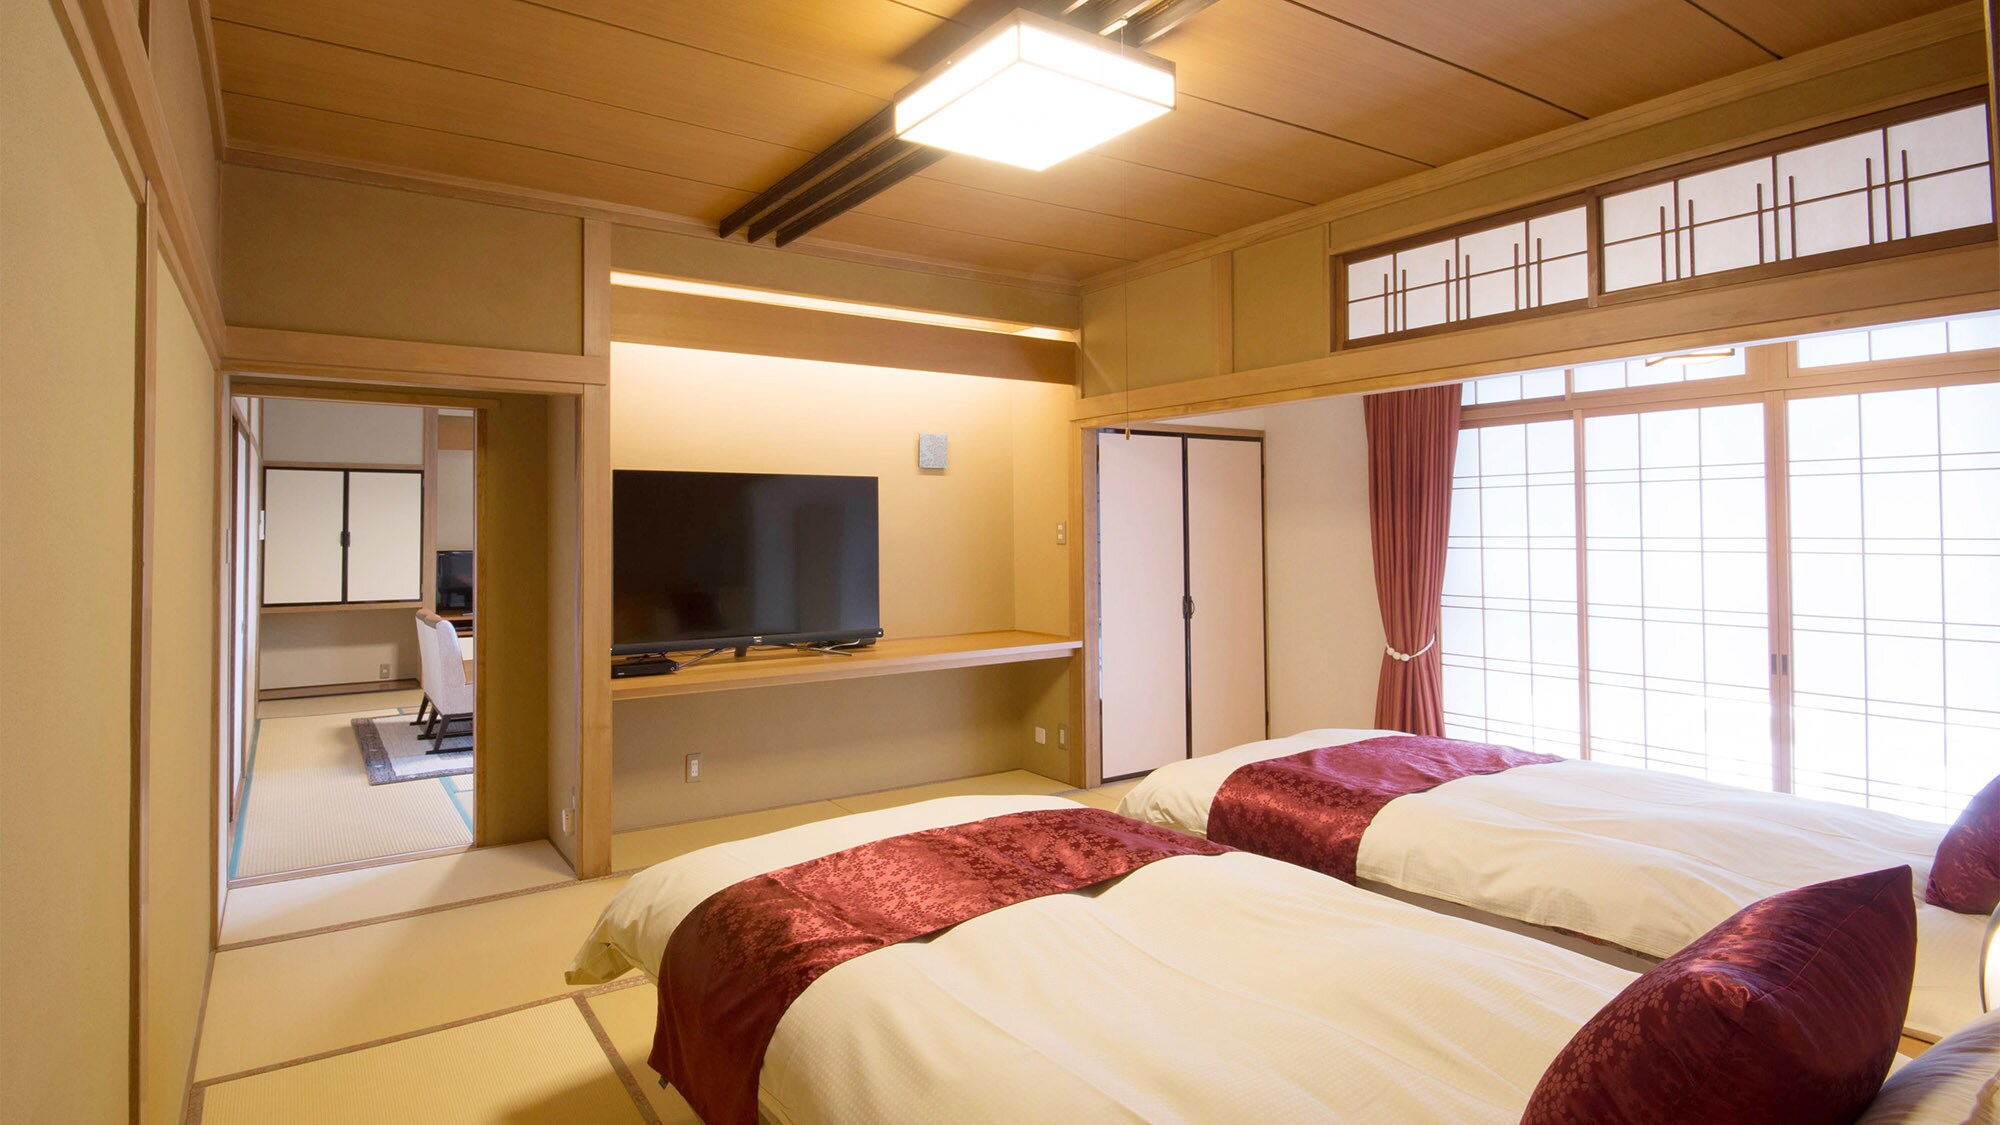 ・ มีทีวีในห้องพักสไตล์ญี่ปุ่นและสไตล์ตะวันตกแต่ละห้อง (ห้องพิเศษ Rindo)